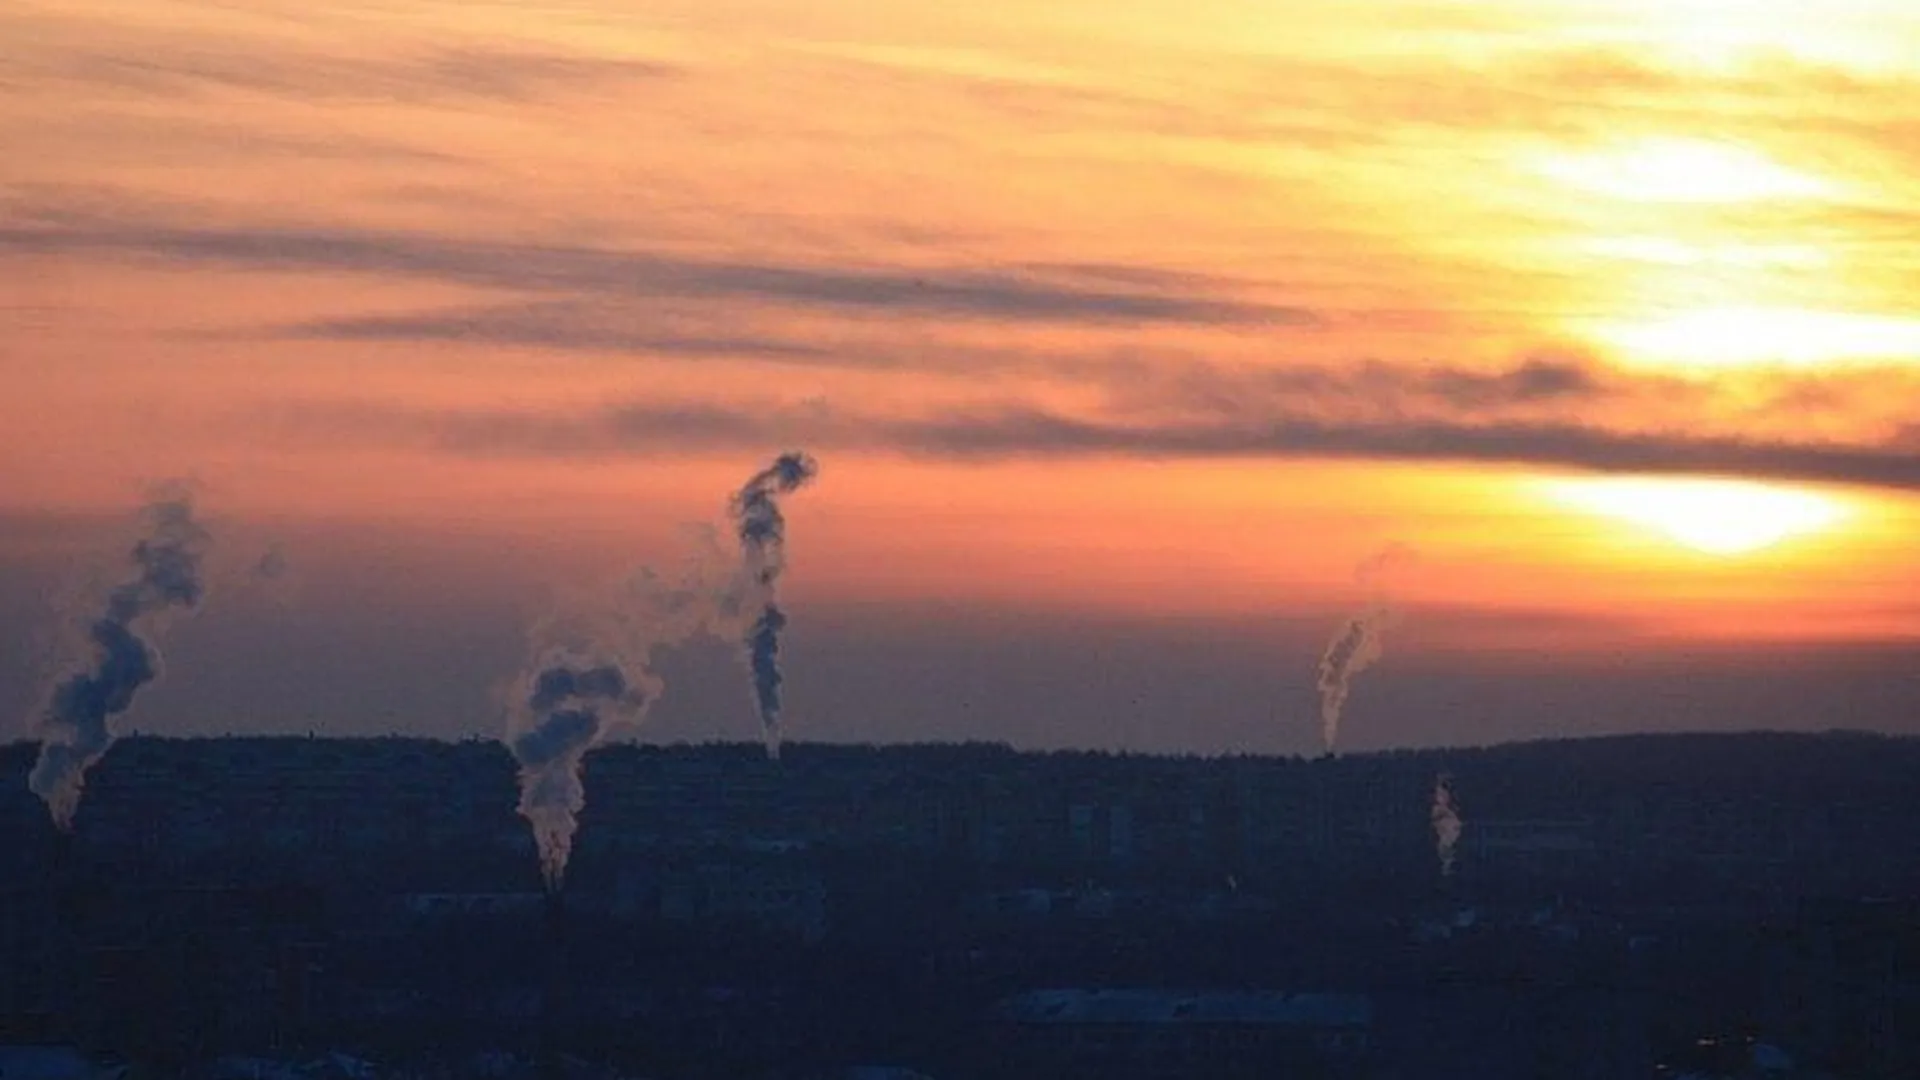 сайт министерства экологии и природопользования Московской области